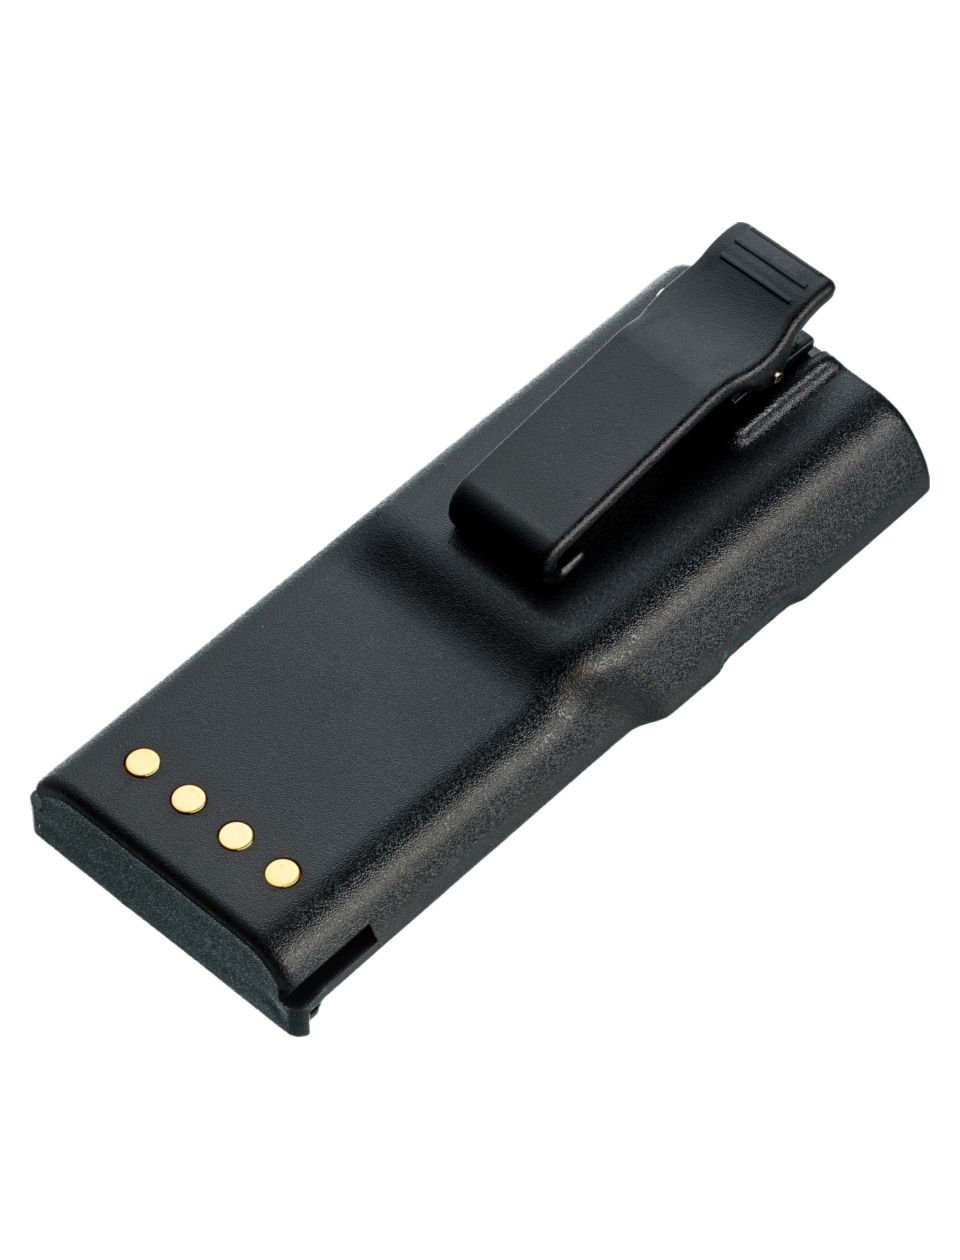 Аккумулятор Pitatel для Motorola GP88/GP300/GTX SERIES/LTS2000, Ni-Mh, 1800mAh, 7.2V (SEB-RS011)